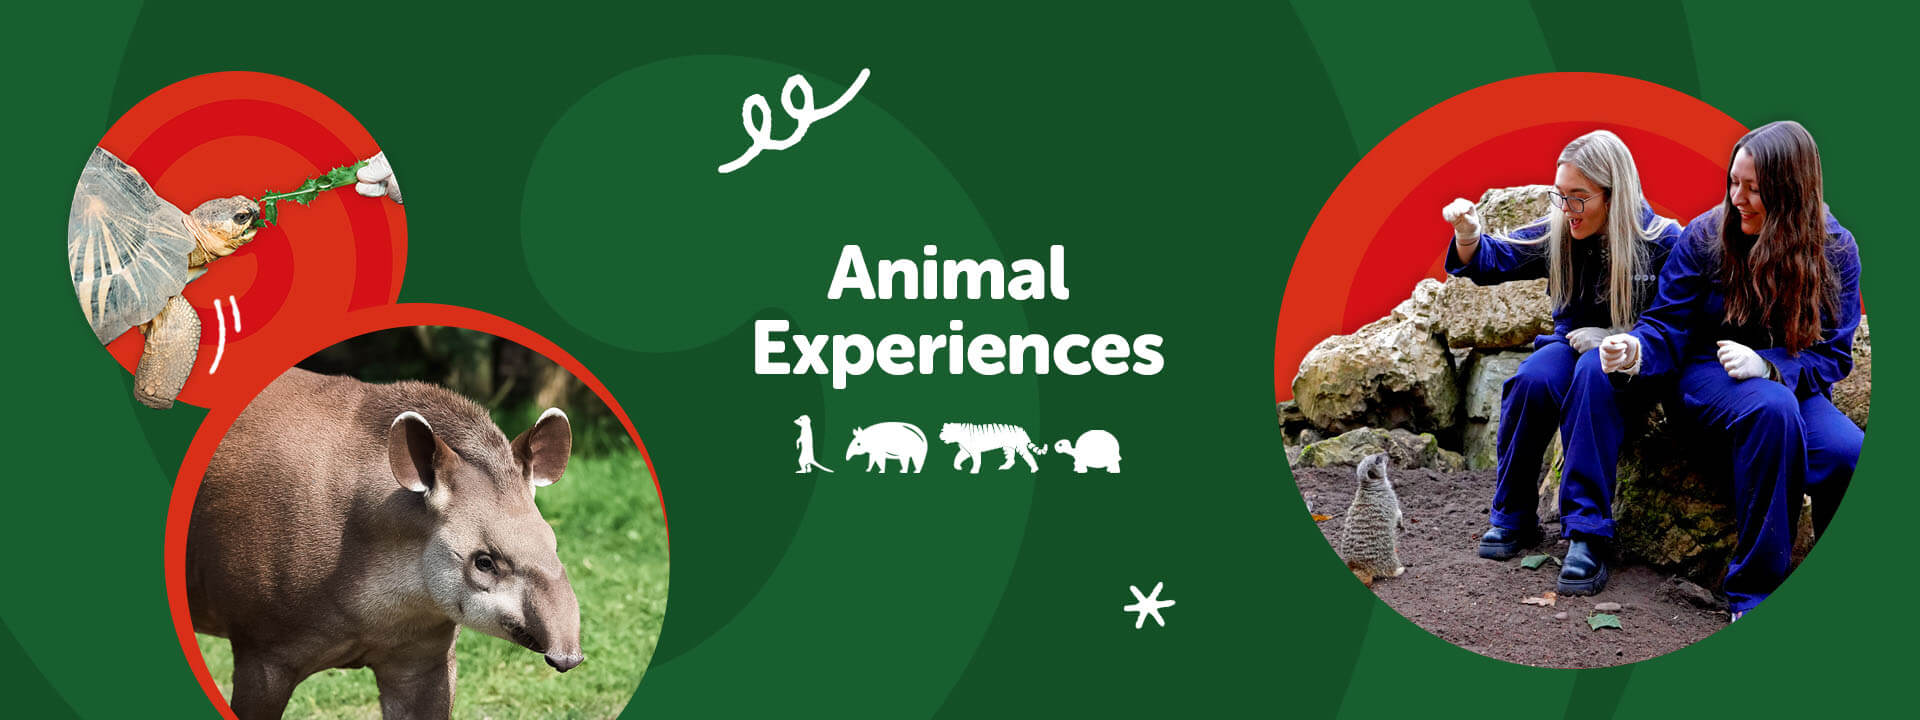 Animal Experiences